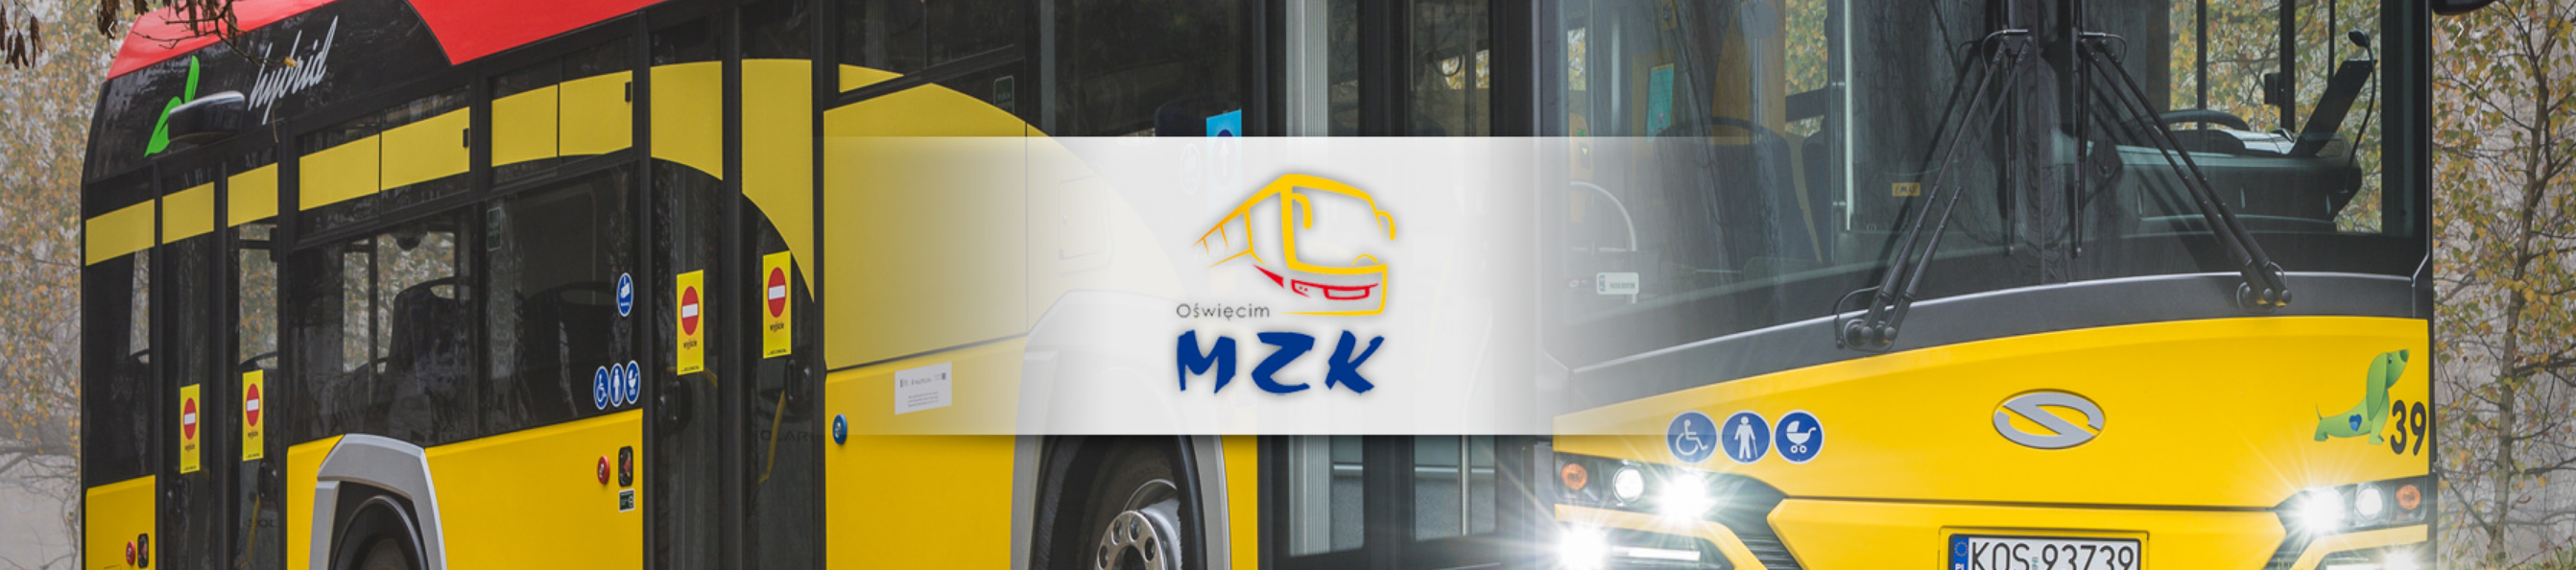 MZK Ośwecim Zmiana Rozkładu jazdy autobusów gmina-oswiecim-pl